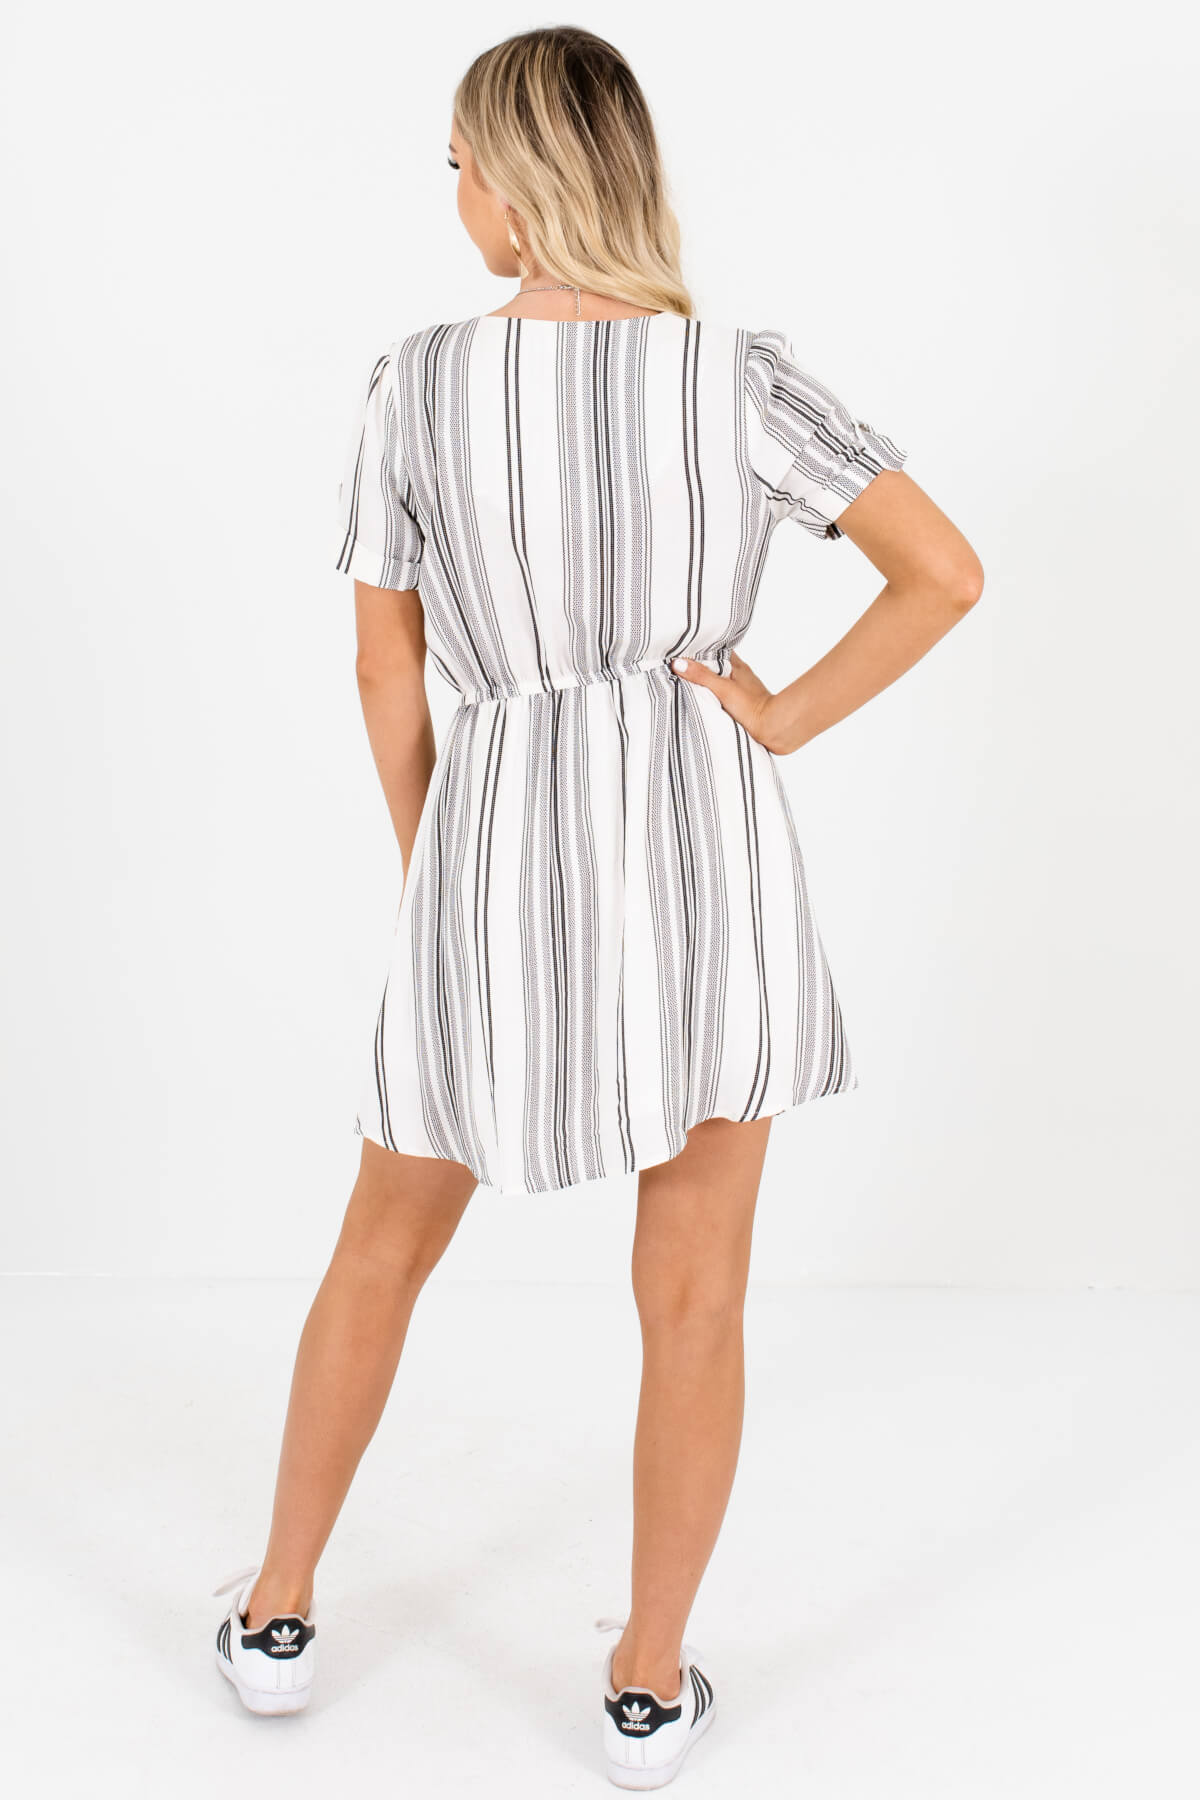 White Black Unique Striped Mini Dresses Affordable Online Boutique